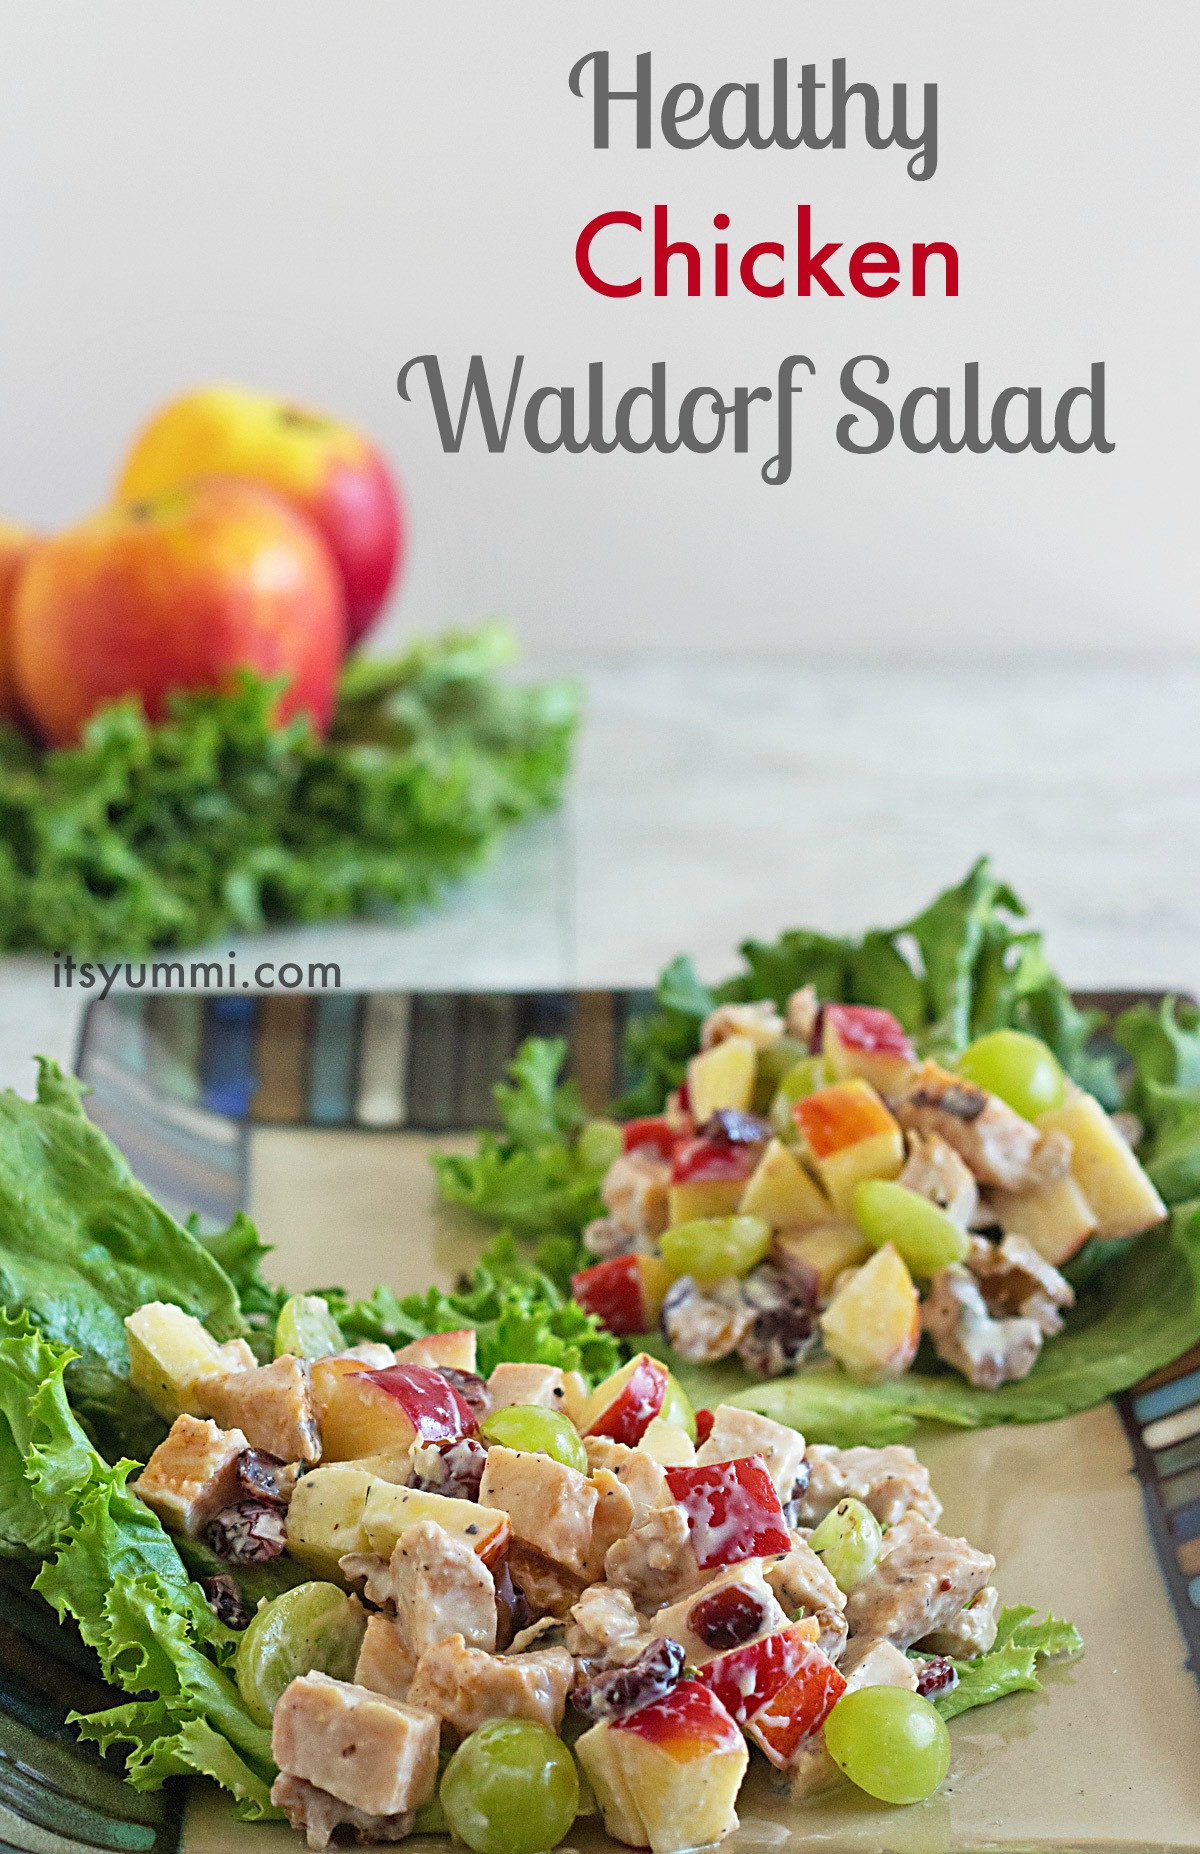 Apple Salad Recipes Healthy
 Healthy Chicken Waldorf Salad Recipe ⋆ Its Yummi